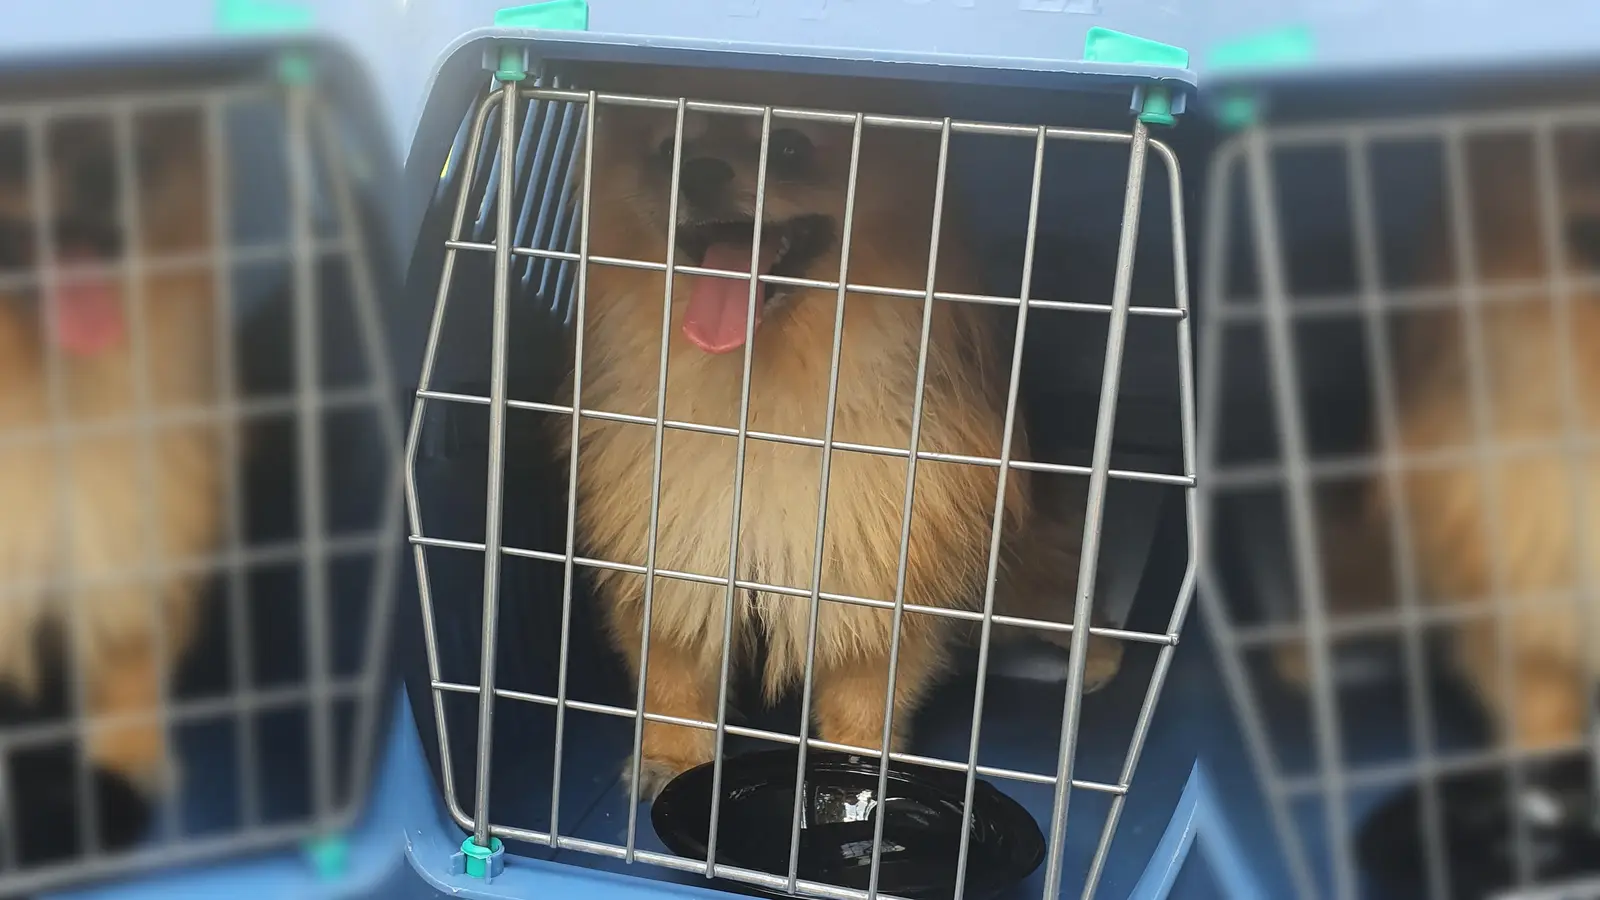 Passanten hatten in einem versperrten Wohnmobil einen Hund entdeckt, der schon sichtlich mit der Hitze im Fahrzeug zu kämpfen hatte. Er wurde von der FFW Dachau befreit. (Foto: FFW Dachau)